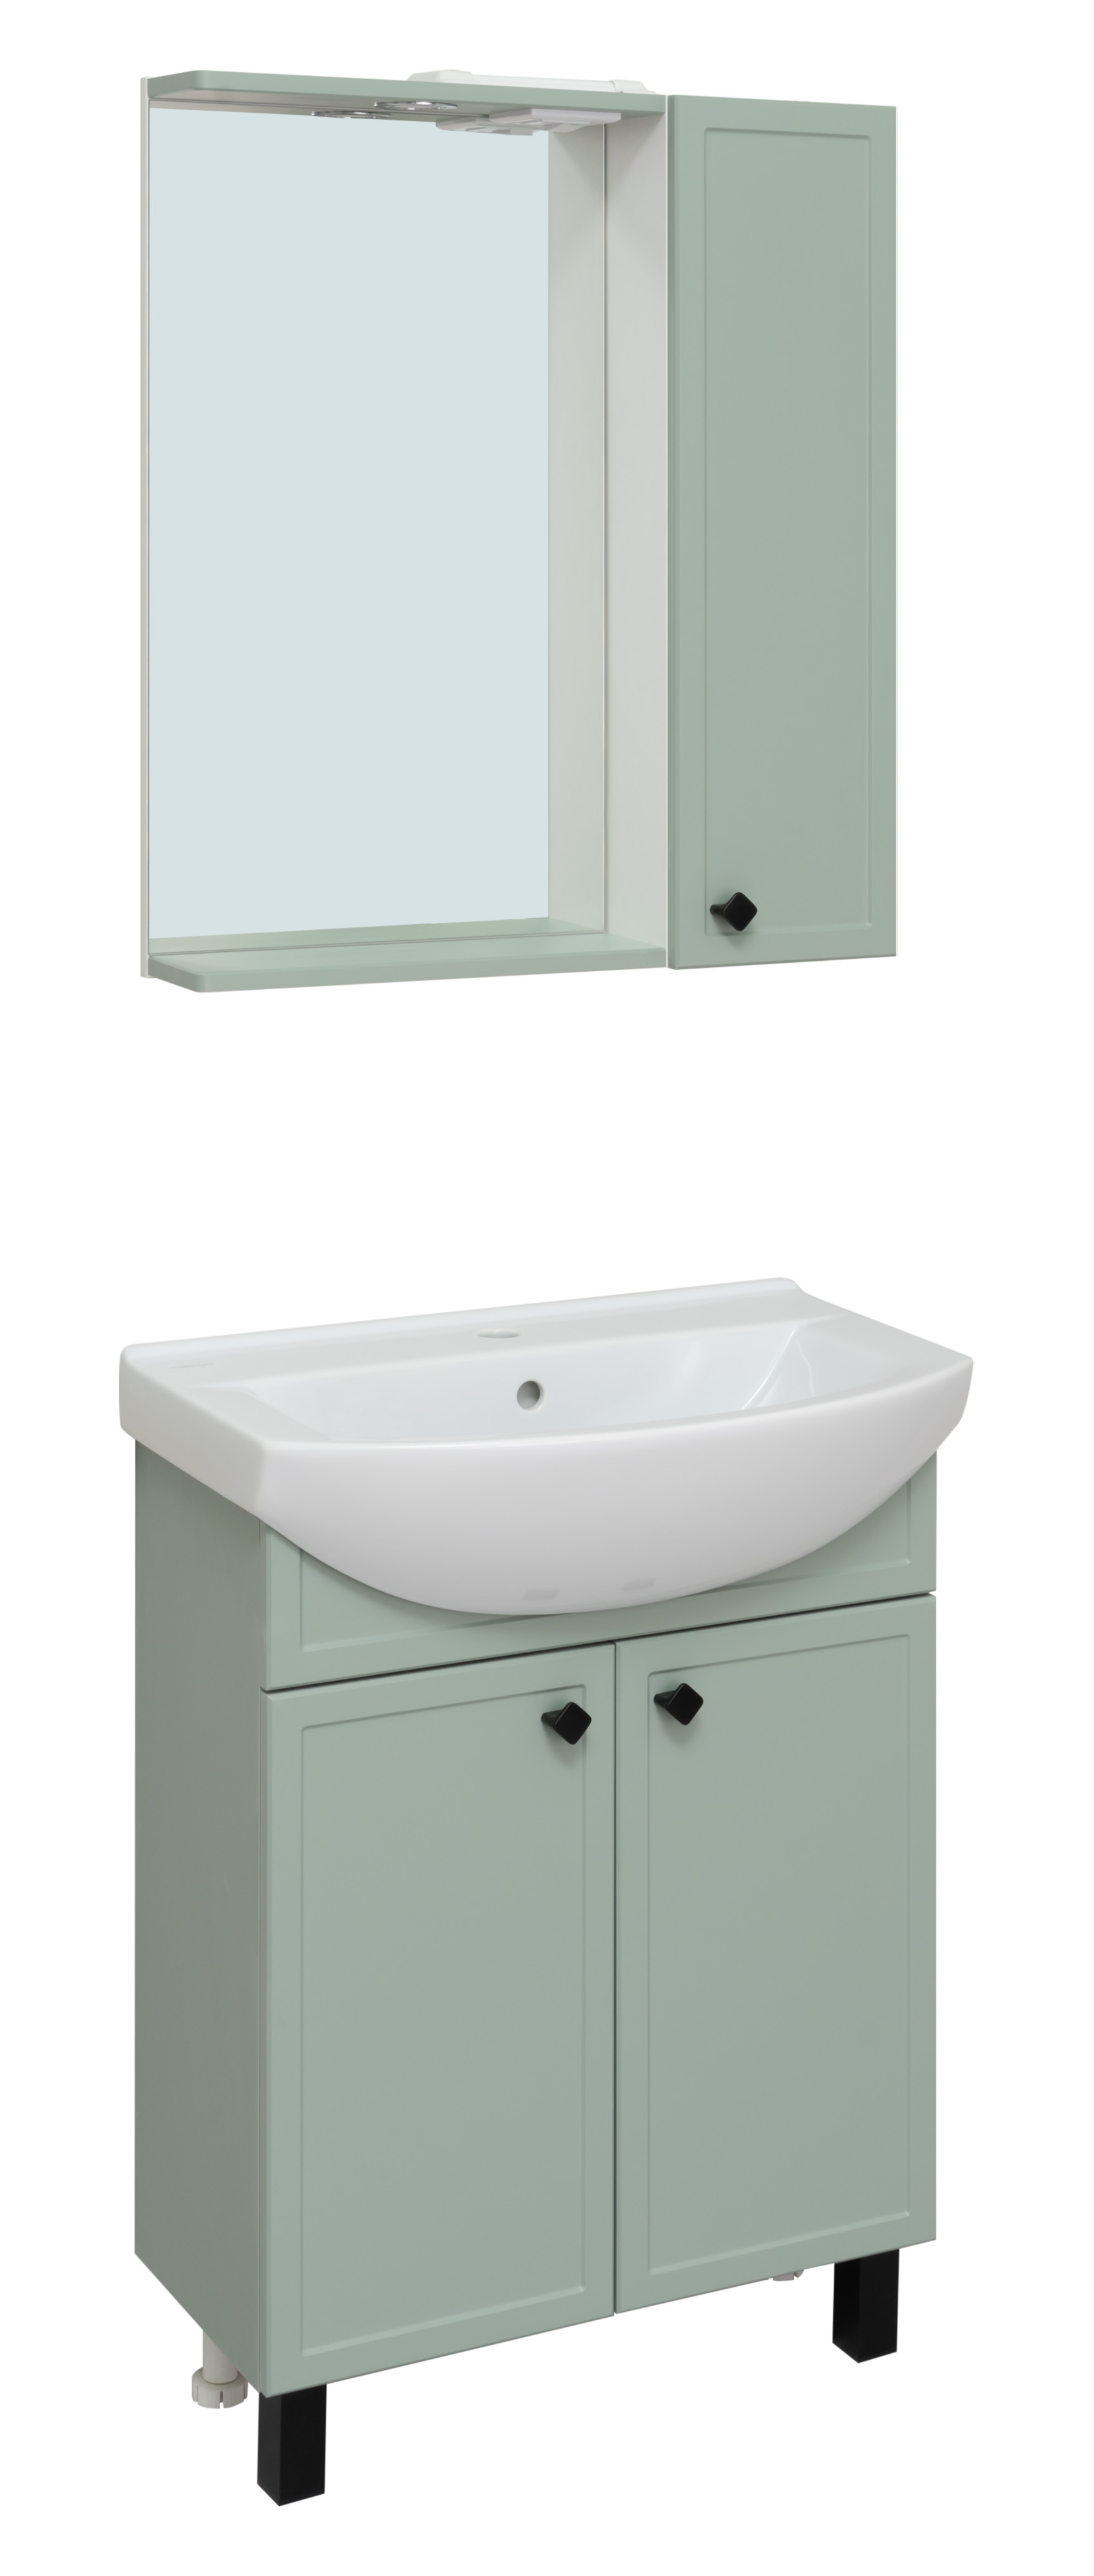 Мебель для ванной комнаты Runo Римини 65 см напольная, мята, цвет зеленый 00-00001273 - фото 2